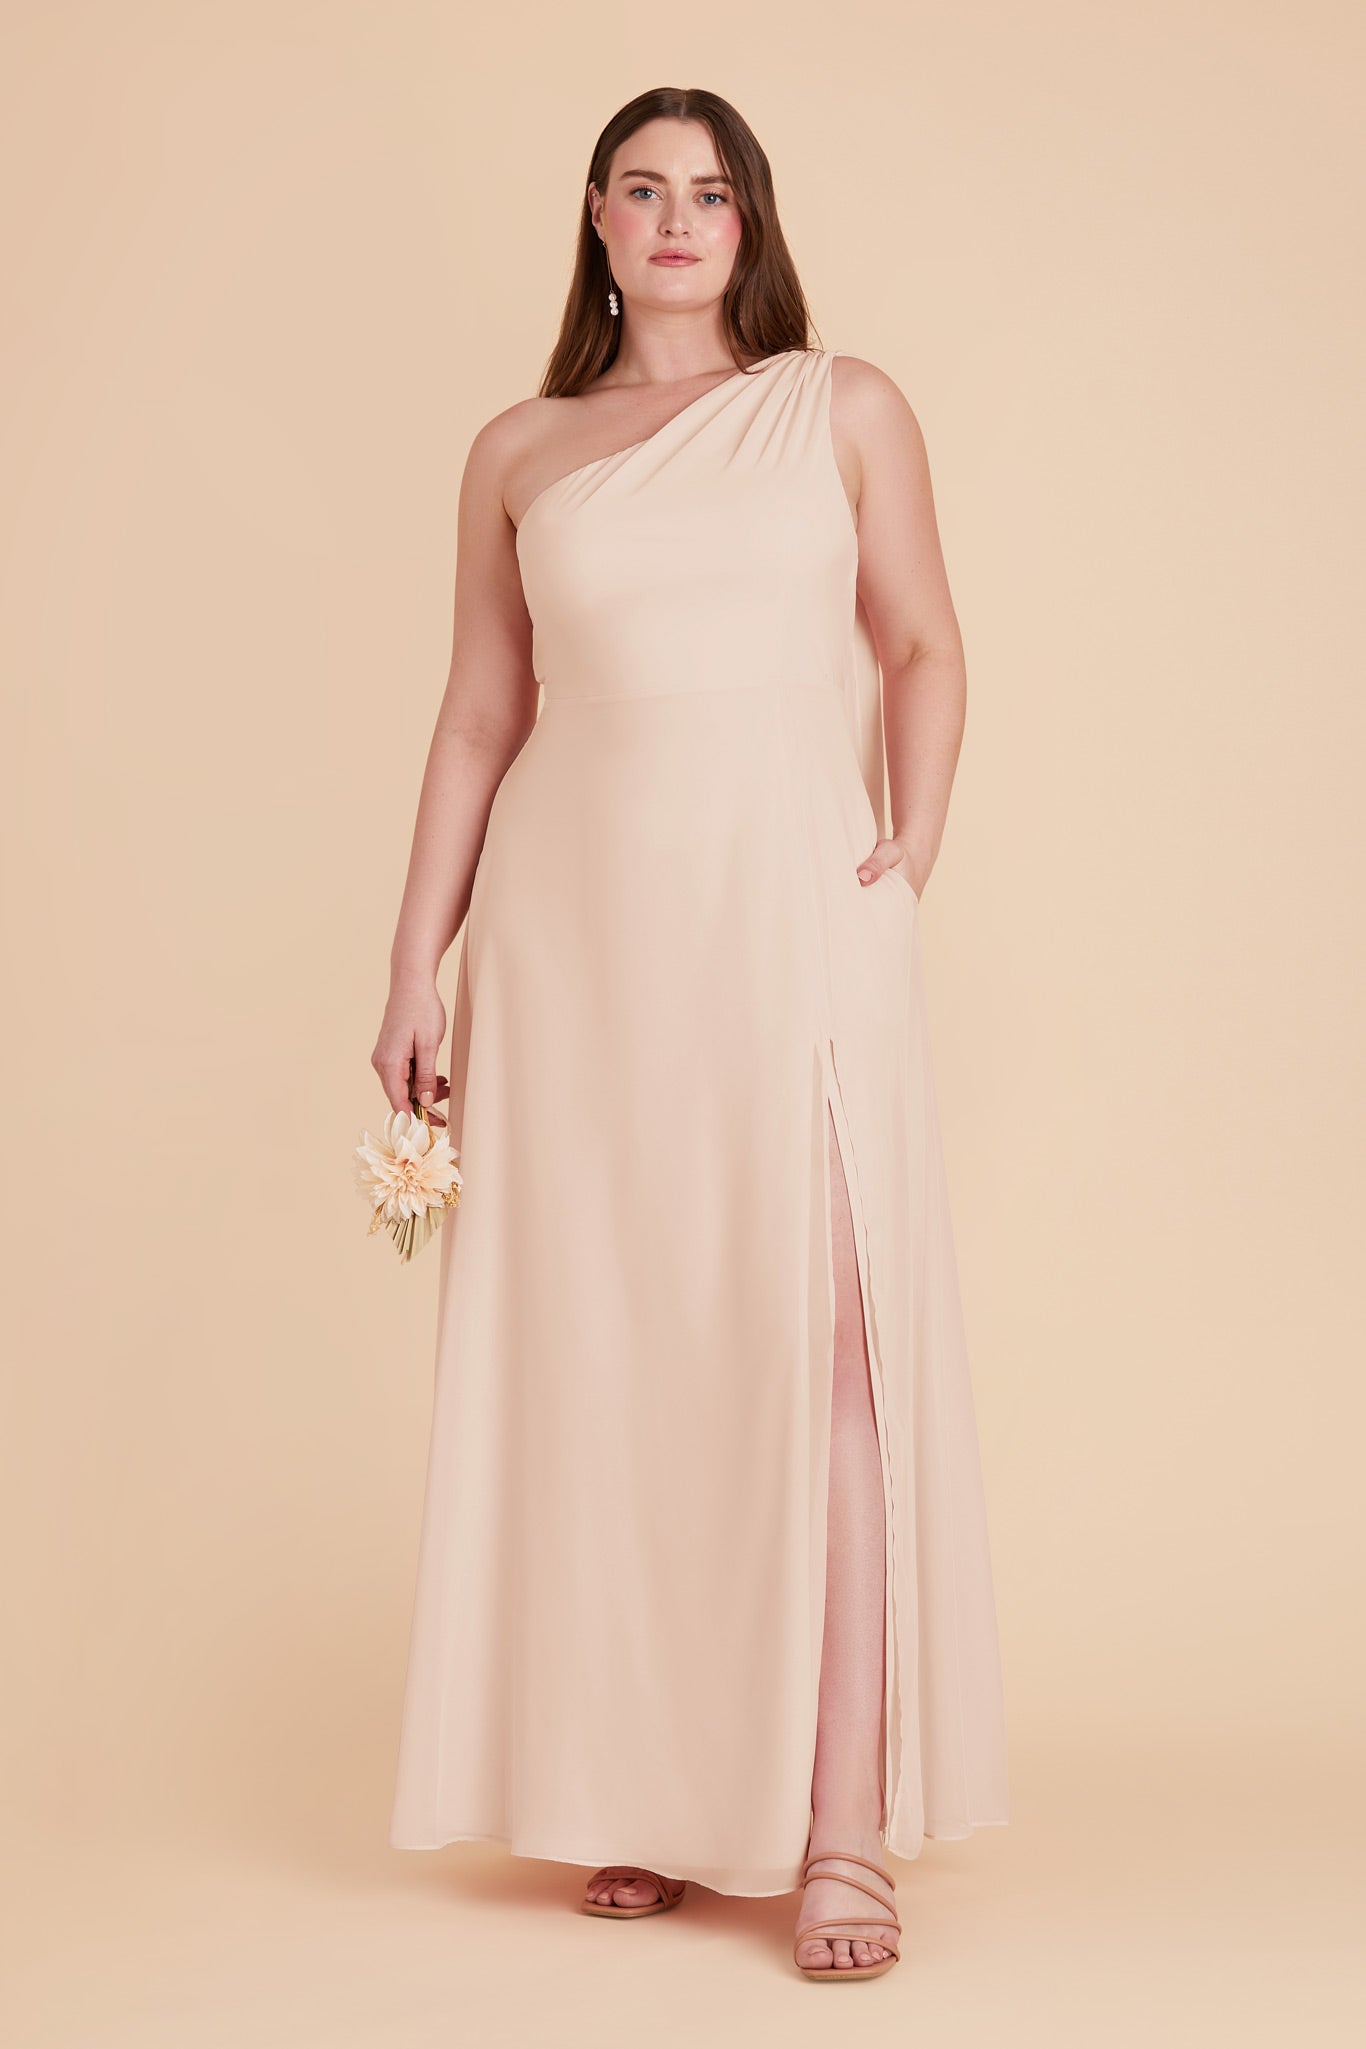 Pale Blush Melissa Chiffon Dress by Birdy Grey